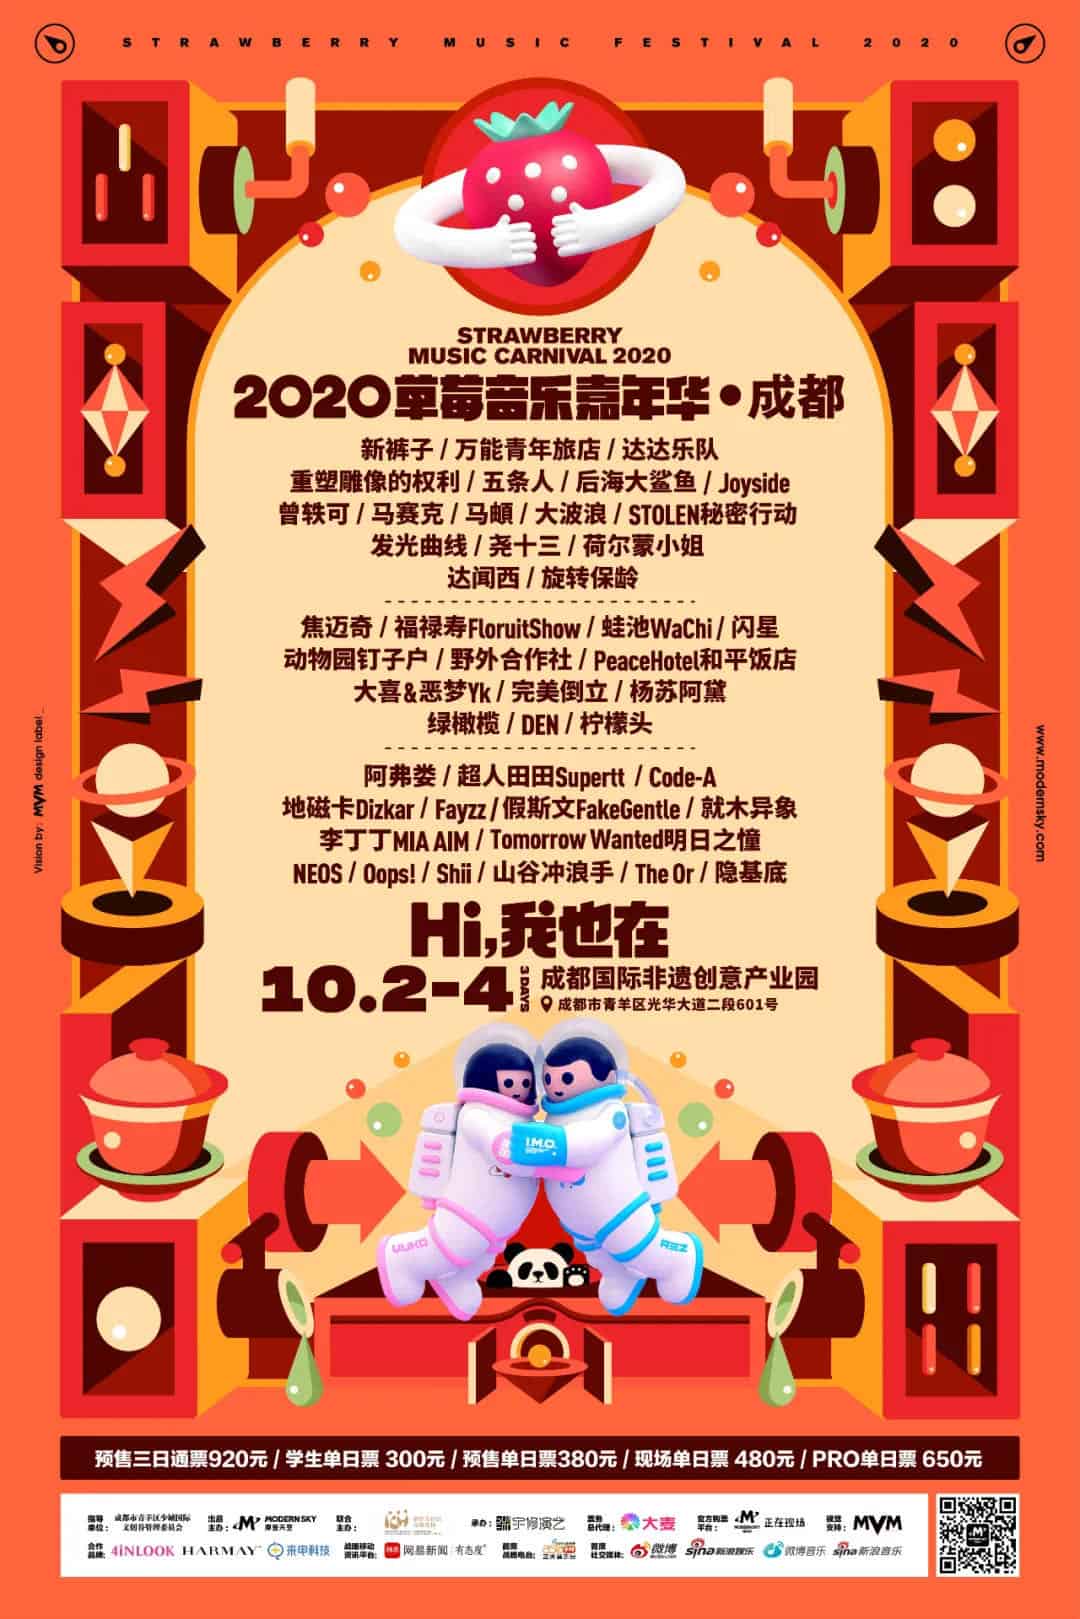 2020 Chengdu Strawberry Music Festival poster chengdu expat 1